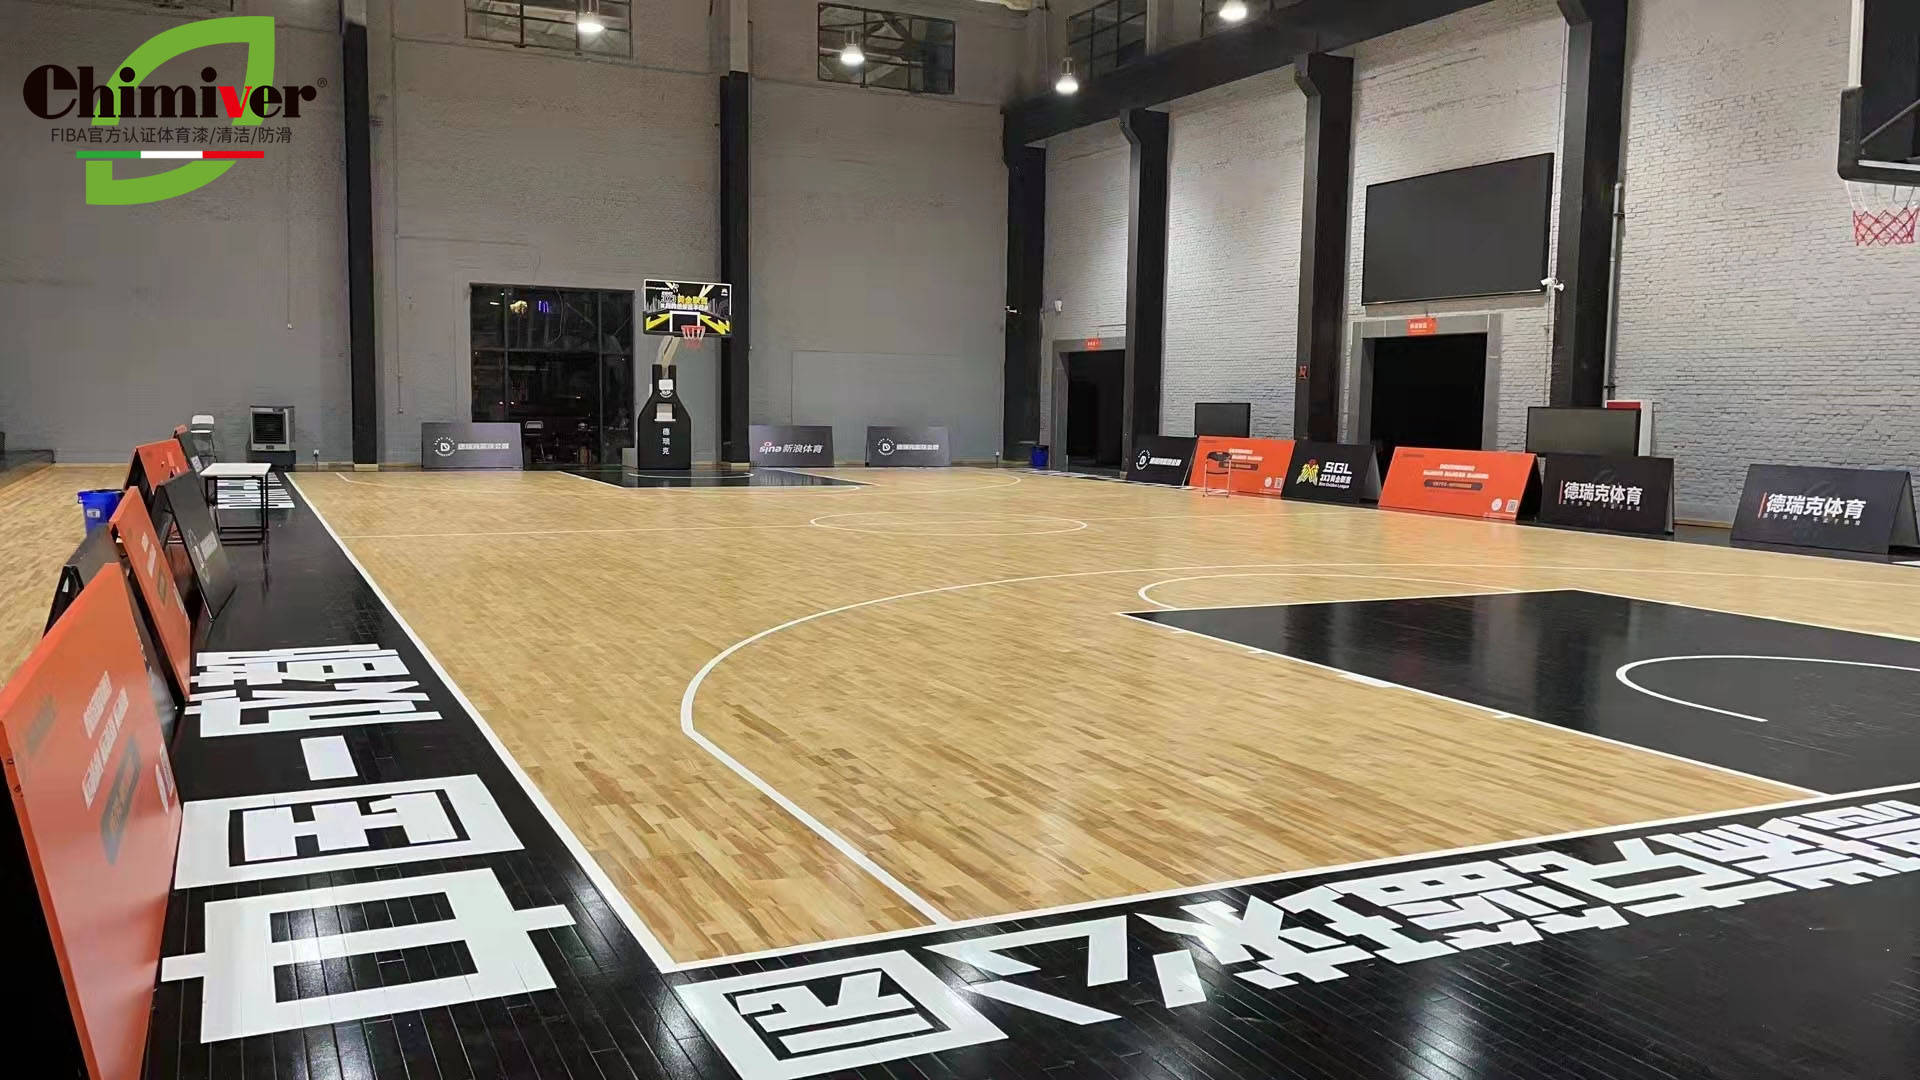 凯美沃篮球馆木地板彩漆修复成都德瑞克篮球馆防滑漆应用案例